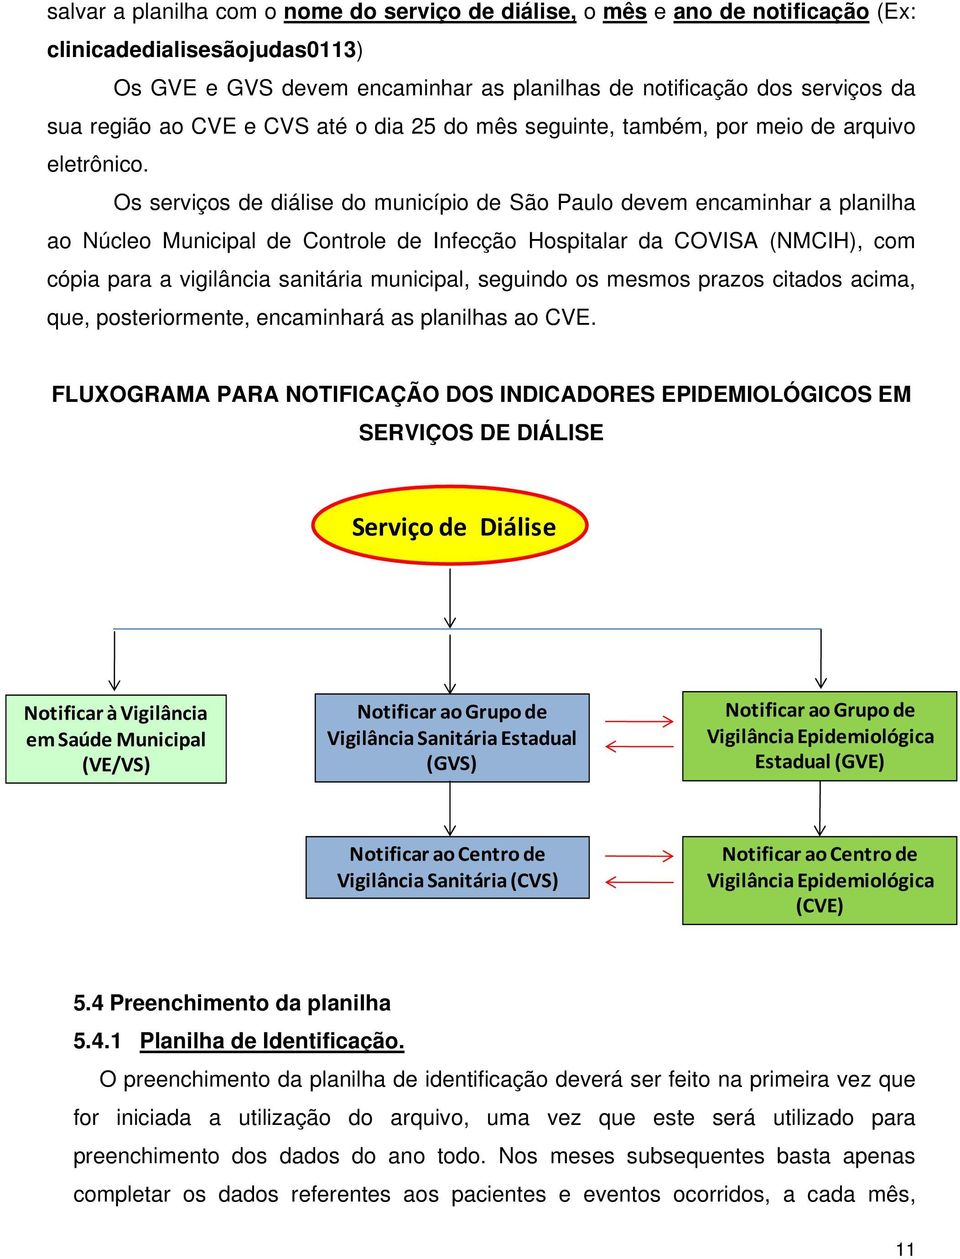 Os serviços de diálise do município de São Paulo devem encaminhar a planilha ao Núcleo Municipal de Controle de Infecção Hospitalar da COVISA (NMCIH), com cópia para a vigilância sanitária municipal,